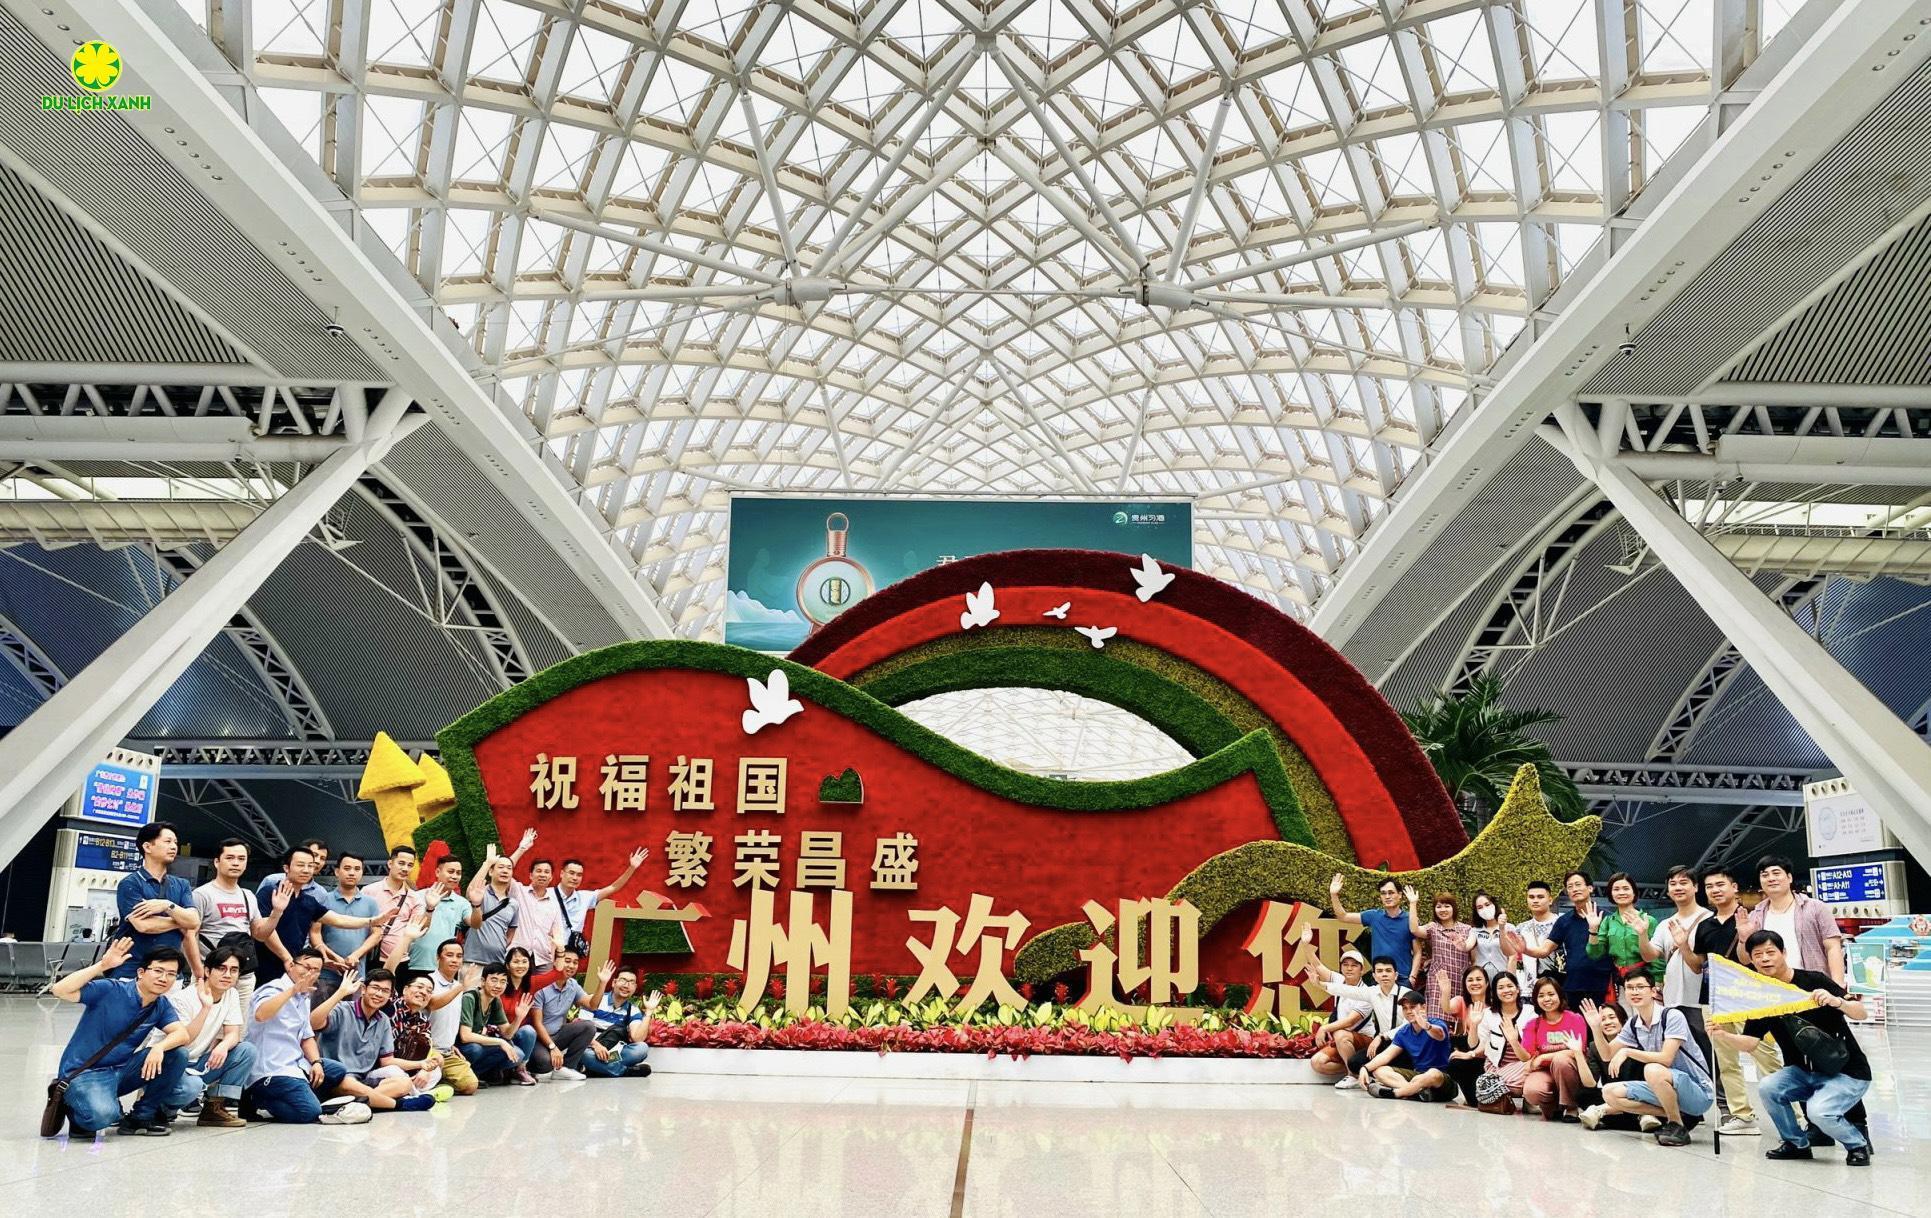 Hội chợ Canton Fair Quảng Châu, Trung Quốc – Tổng hợp tất tần tật thông tin từ A-Z